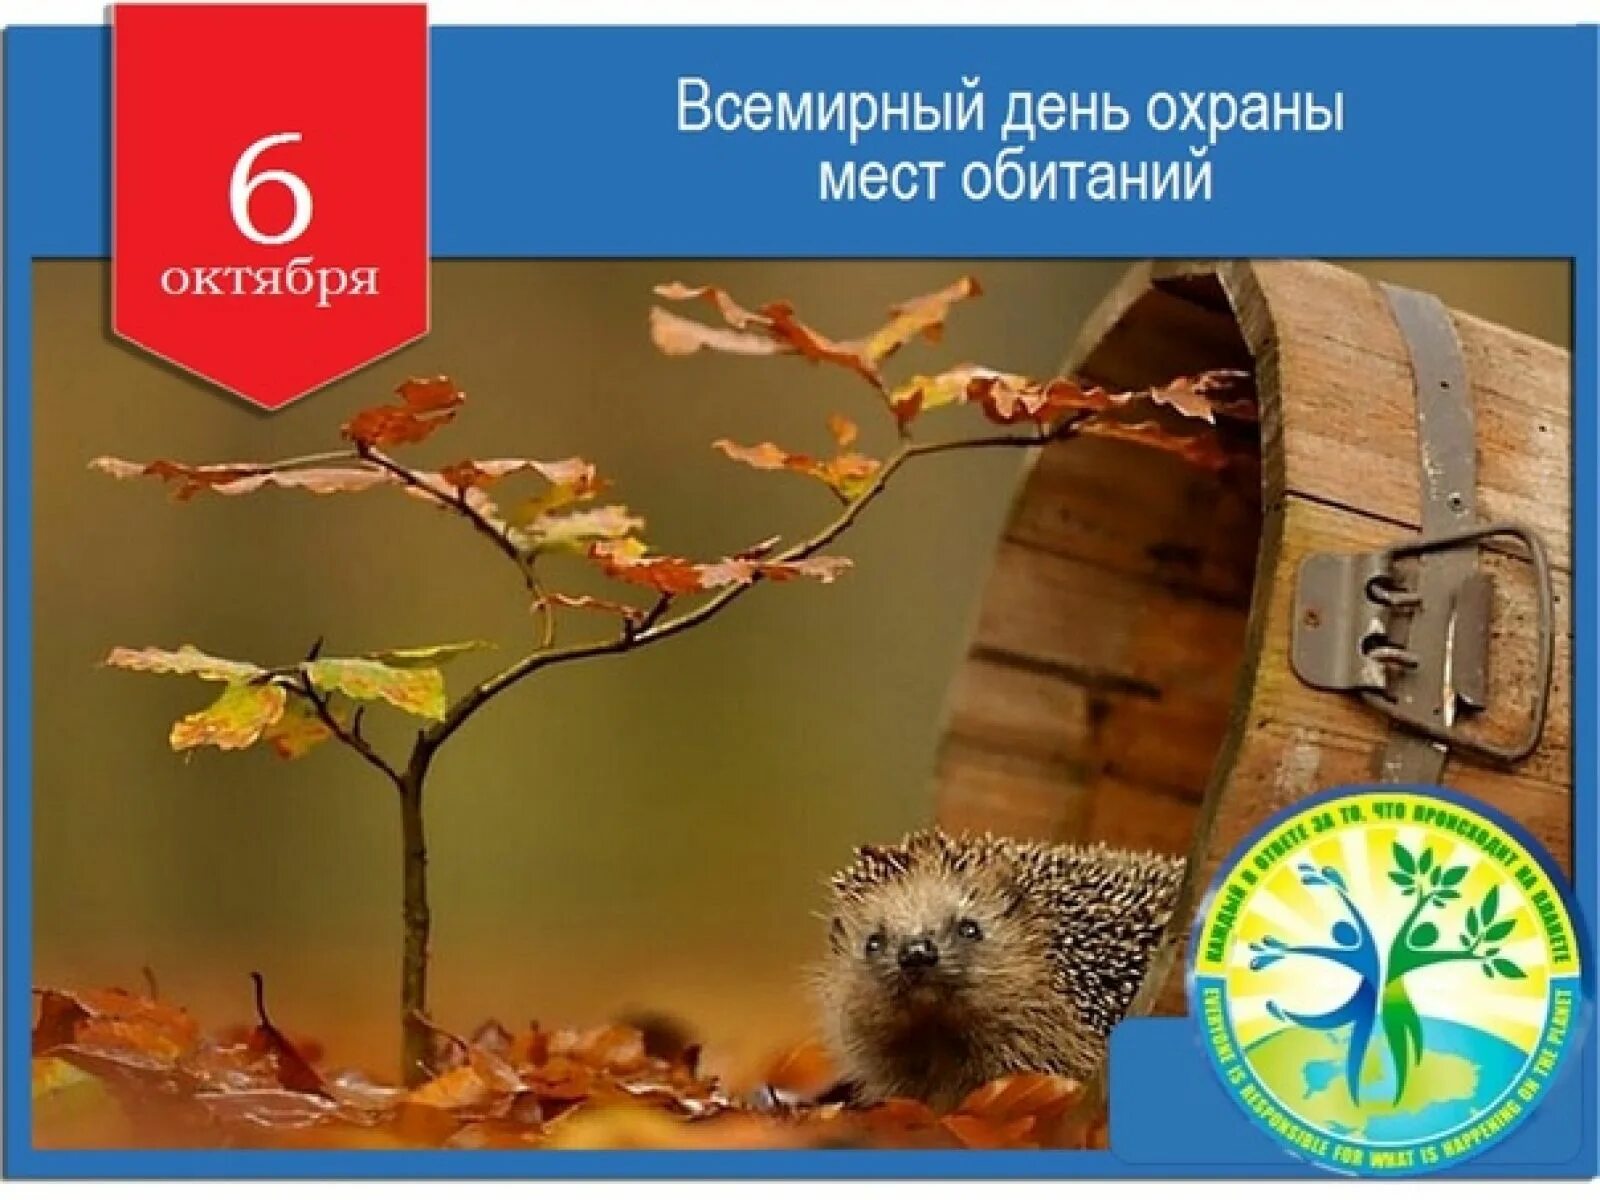 Имени 6 октября. 6 Октября Всемирный день охраны мест обитания. День охраны мест обитания 6 октября. День охраны среды обитания. Всемирный день охраны среды обитания.